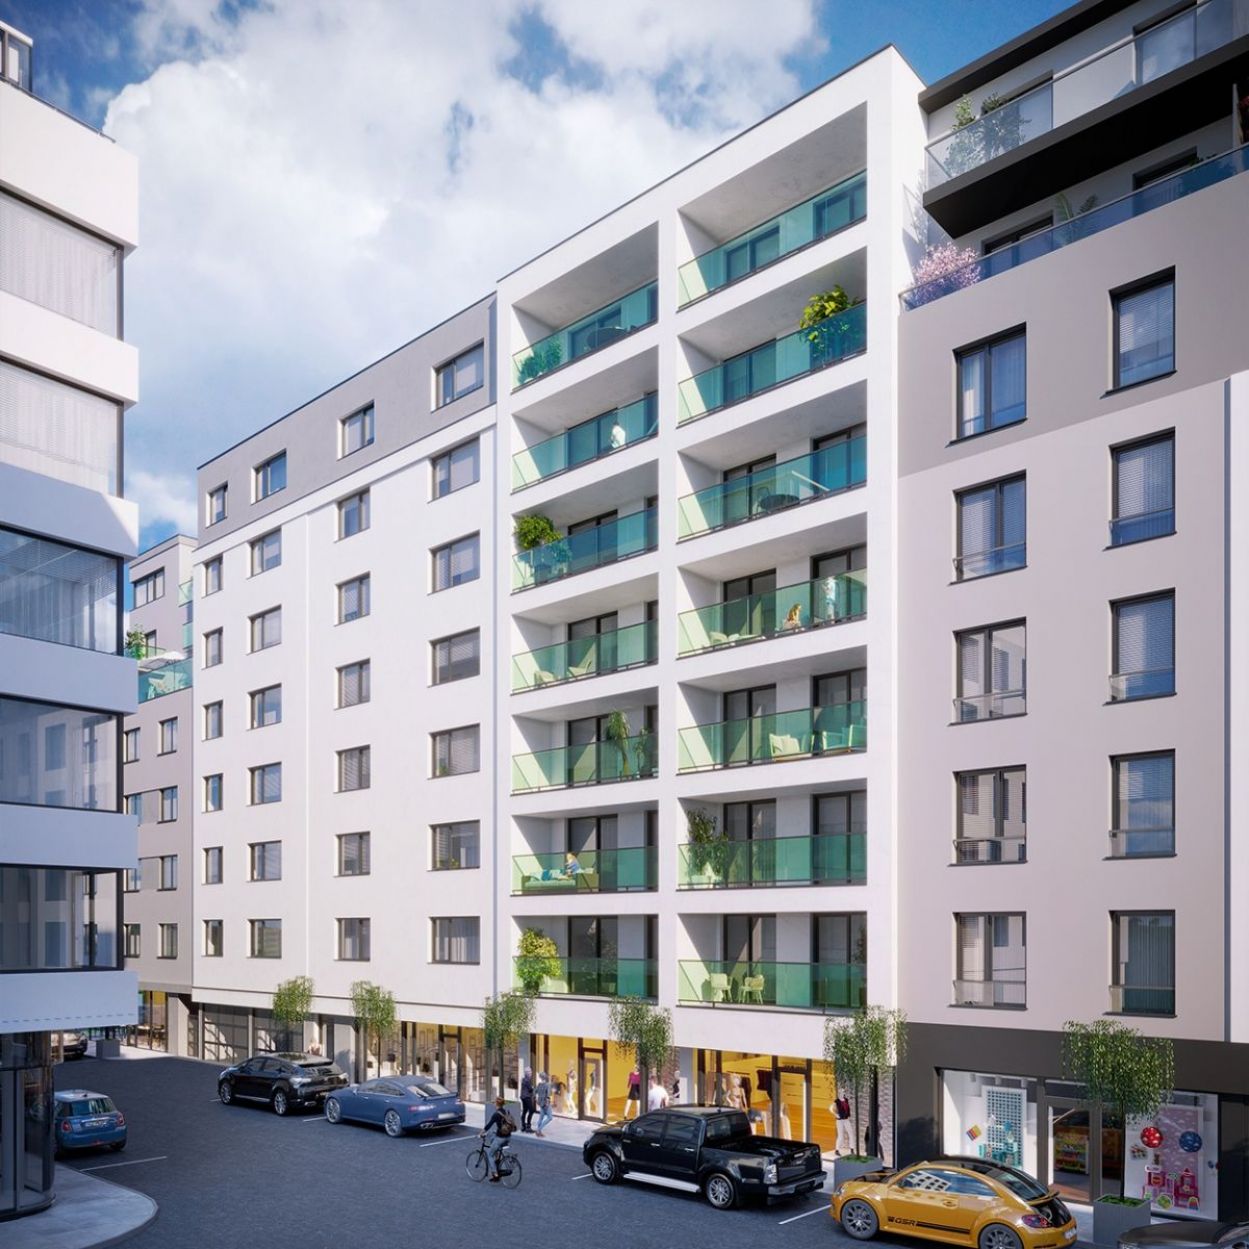 Novostavba bytu v Plzni v Poděbradově ulici, obrázek č. 2